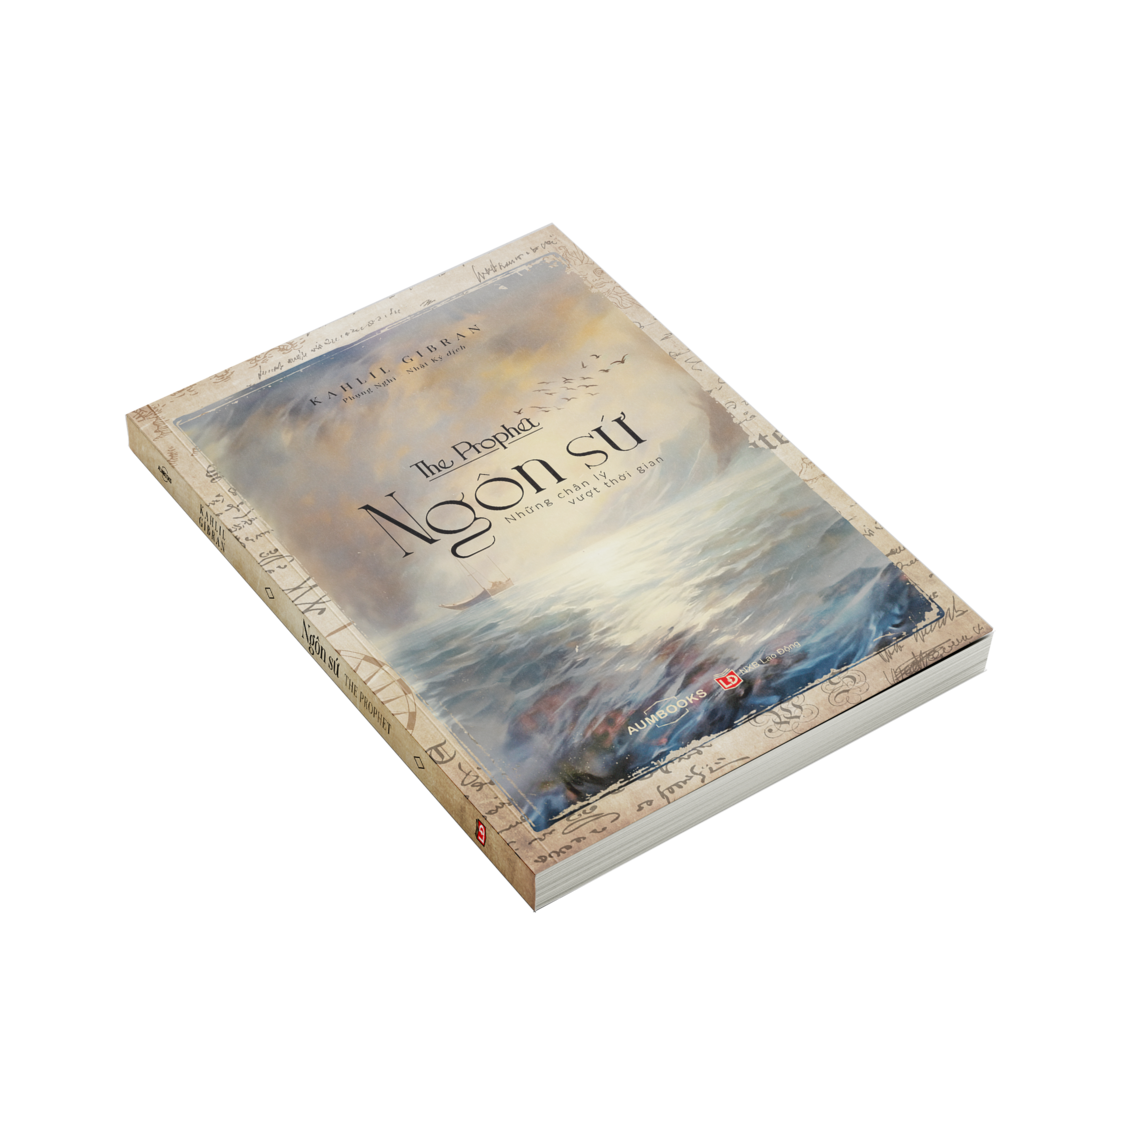 Sách Ngôn Sứ ( The Prophet ) sách tôn giáo tâm linh nghệ thuật sống đẹp - Hiệu sách Genbooks, bìa mềm, in màu